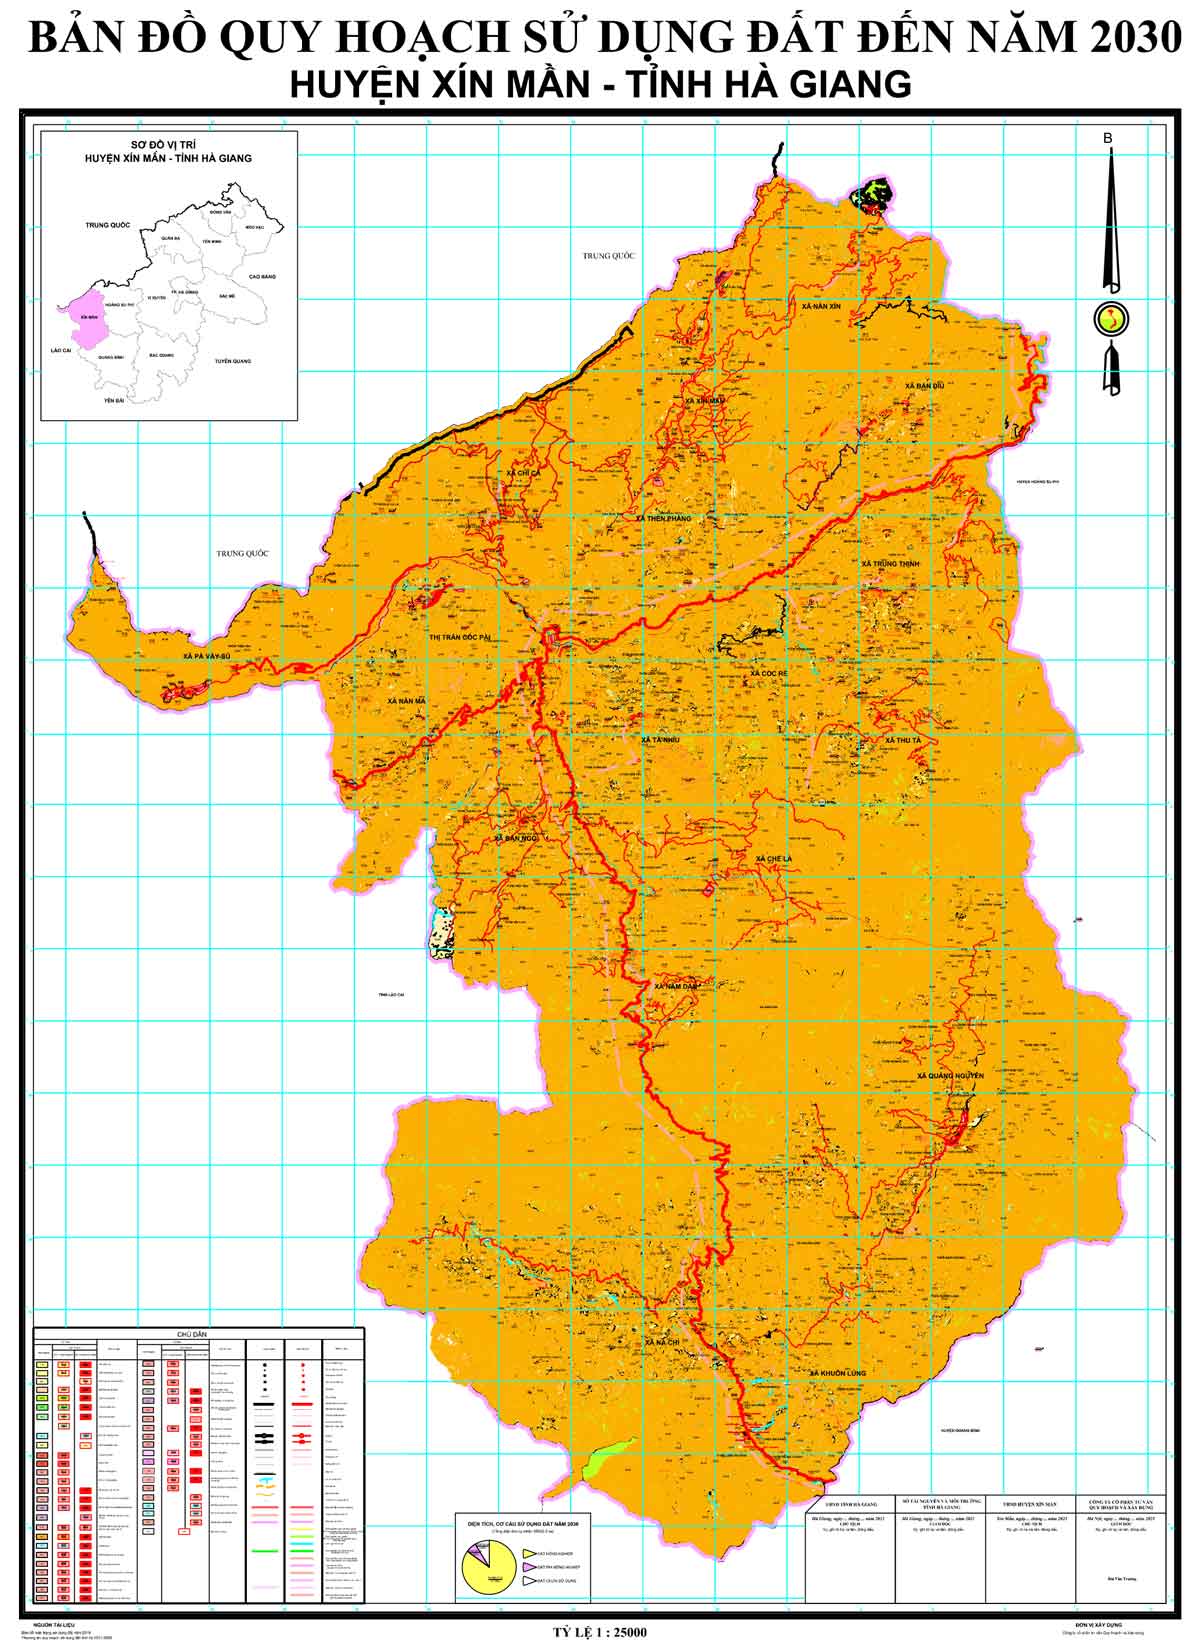 Bản đồ QHSDĐ huyện Xín Mần đến năm 2030